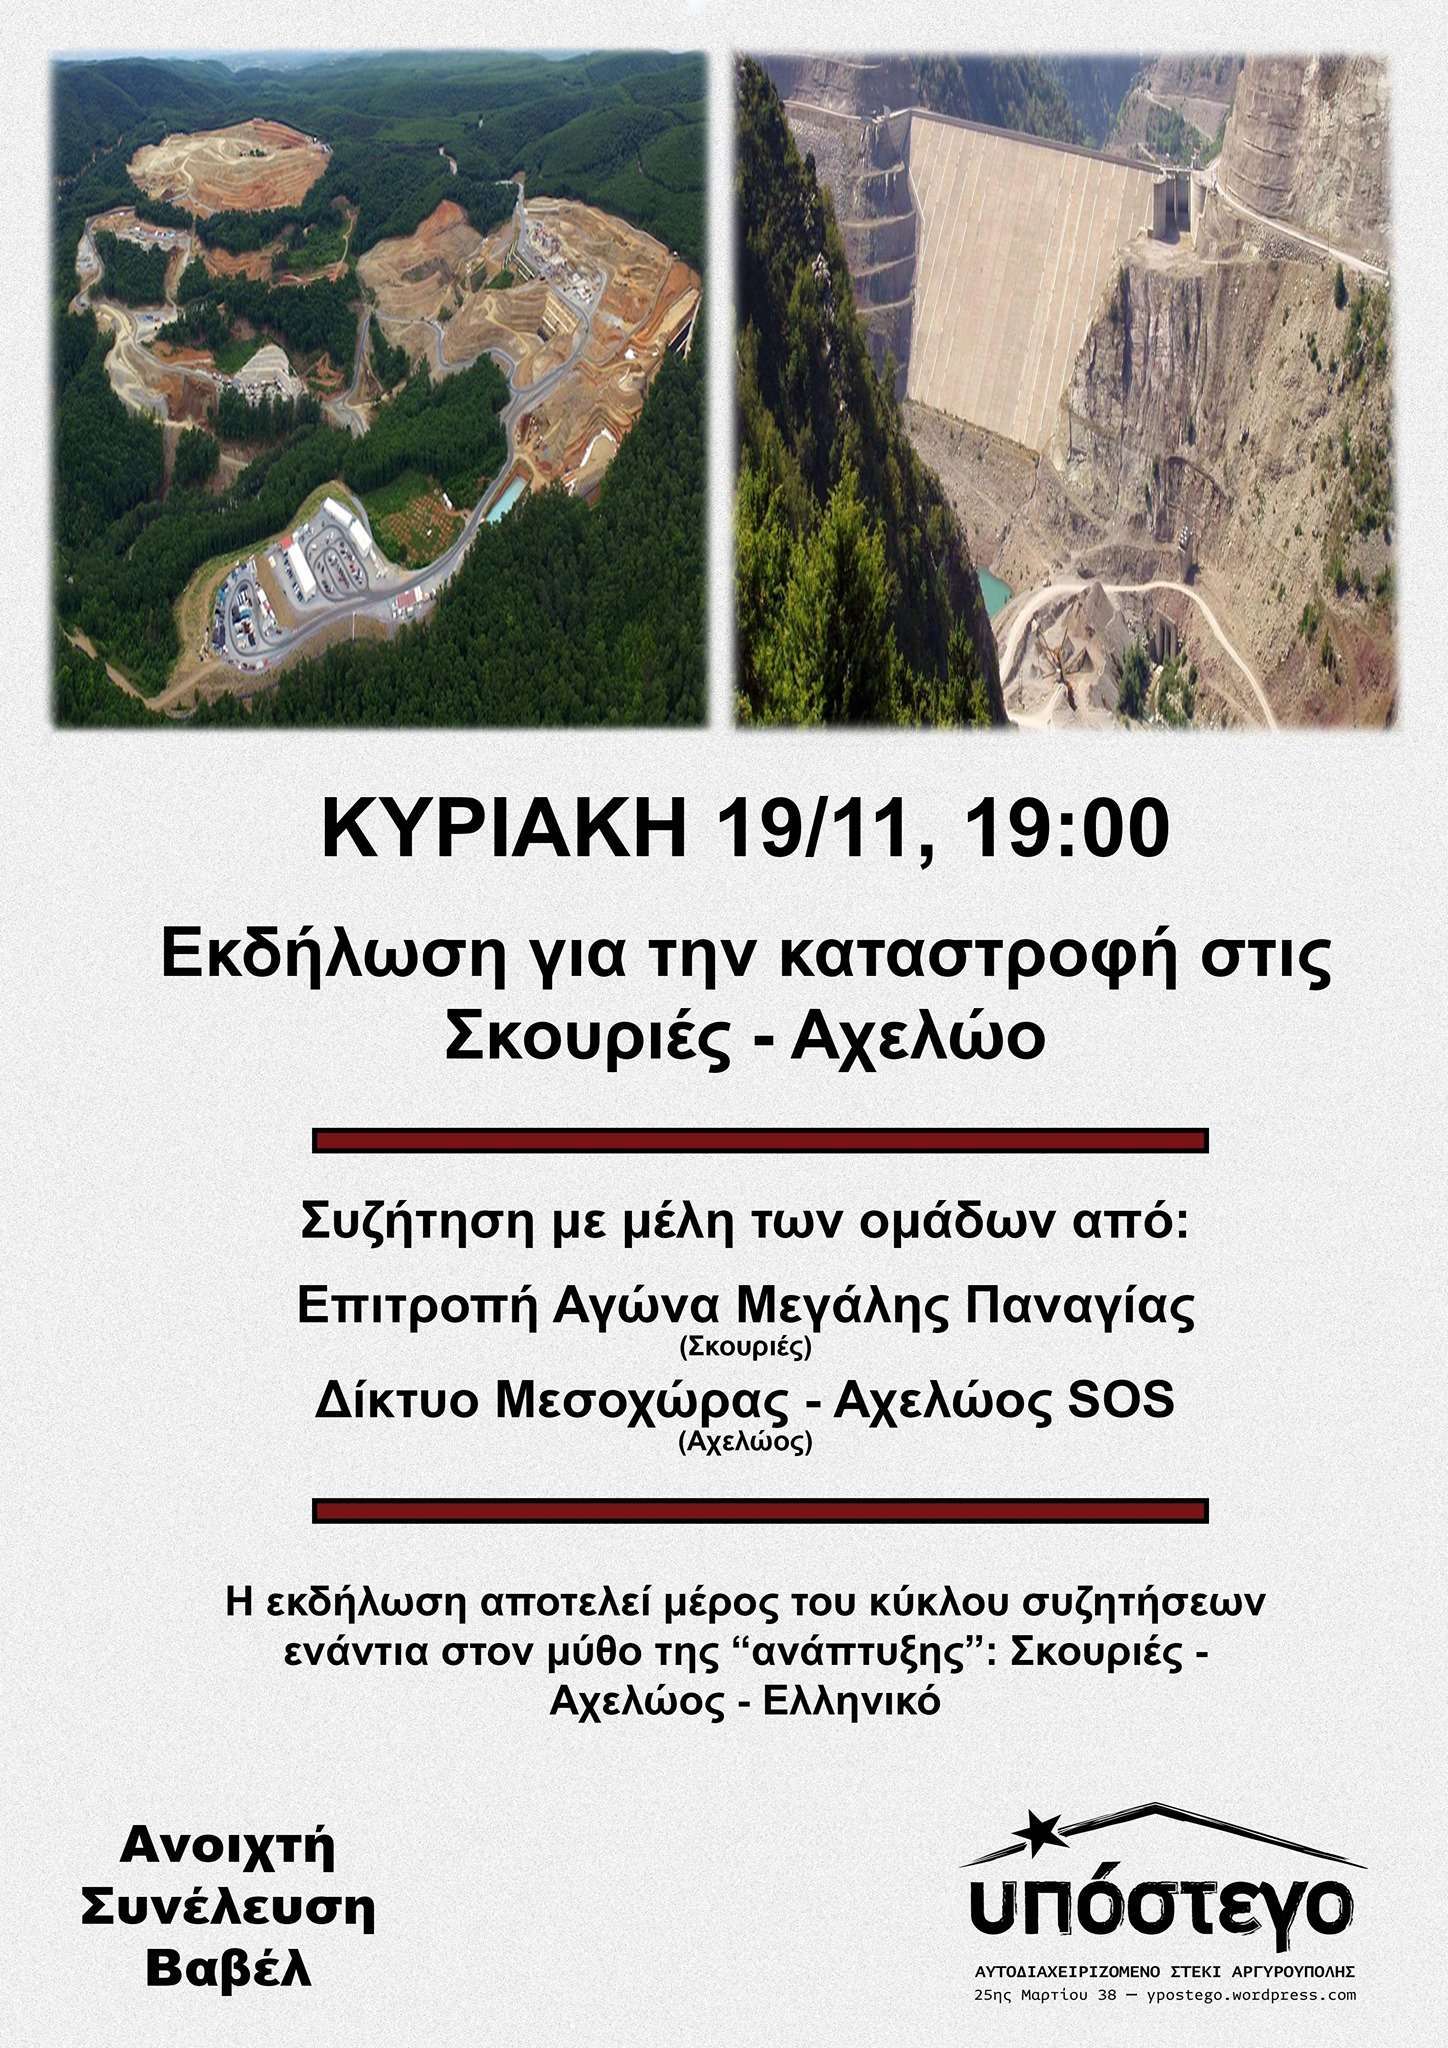 Αργυρούπολη: Εκδήλωση – Συζήτηση για την οικολογική καταστροφή στις Σκουριές και τον Αχελώο | Κυριακή 19/11, στις 19:00